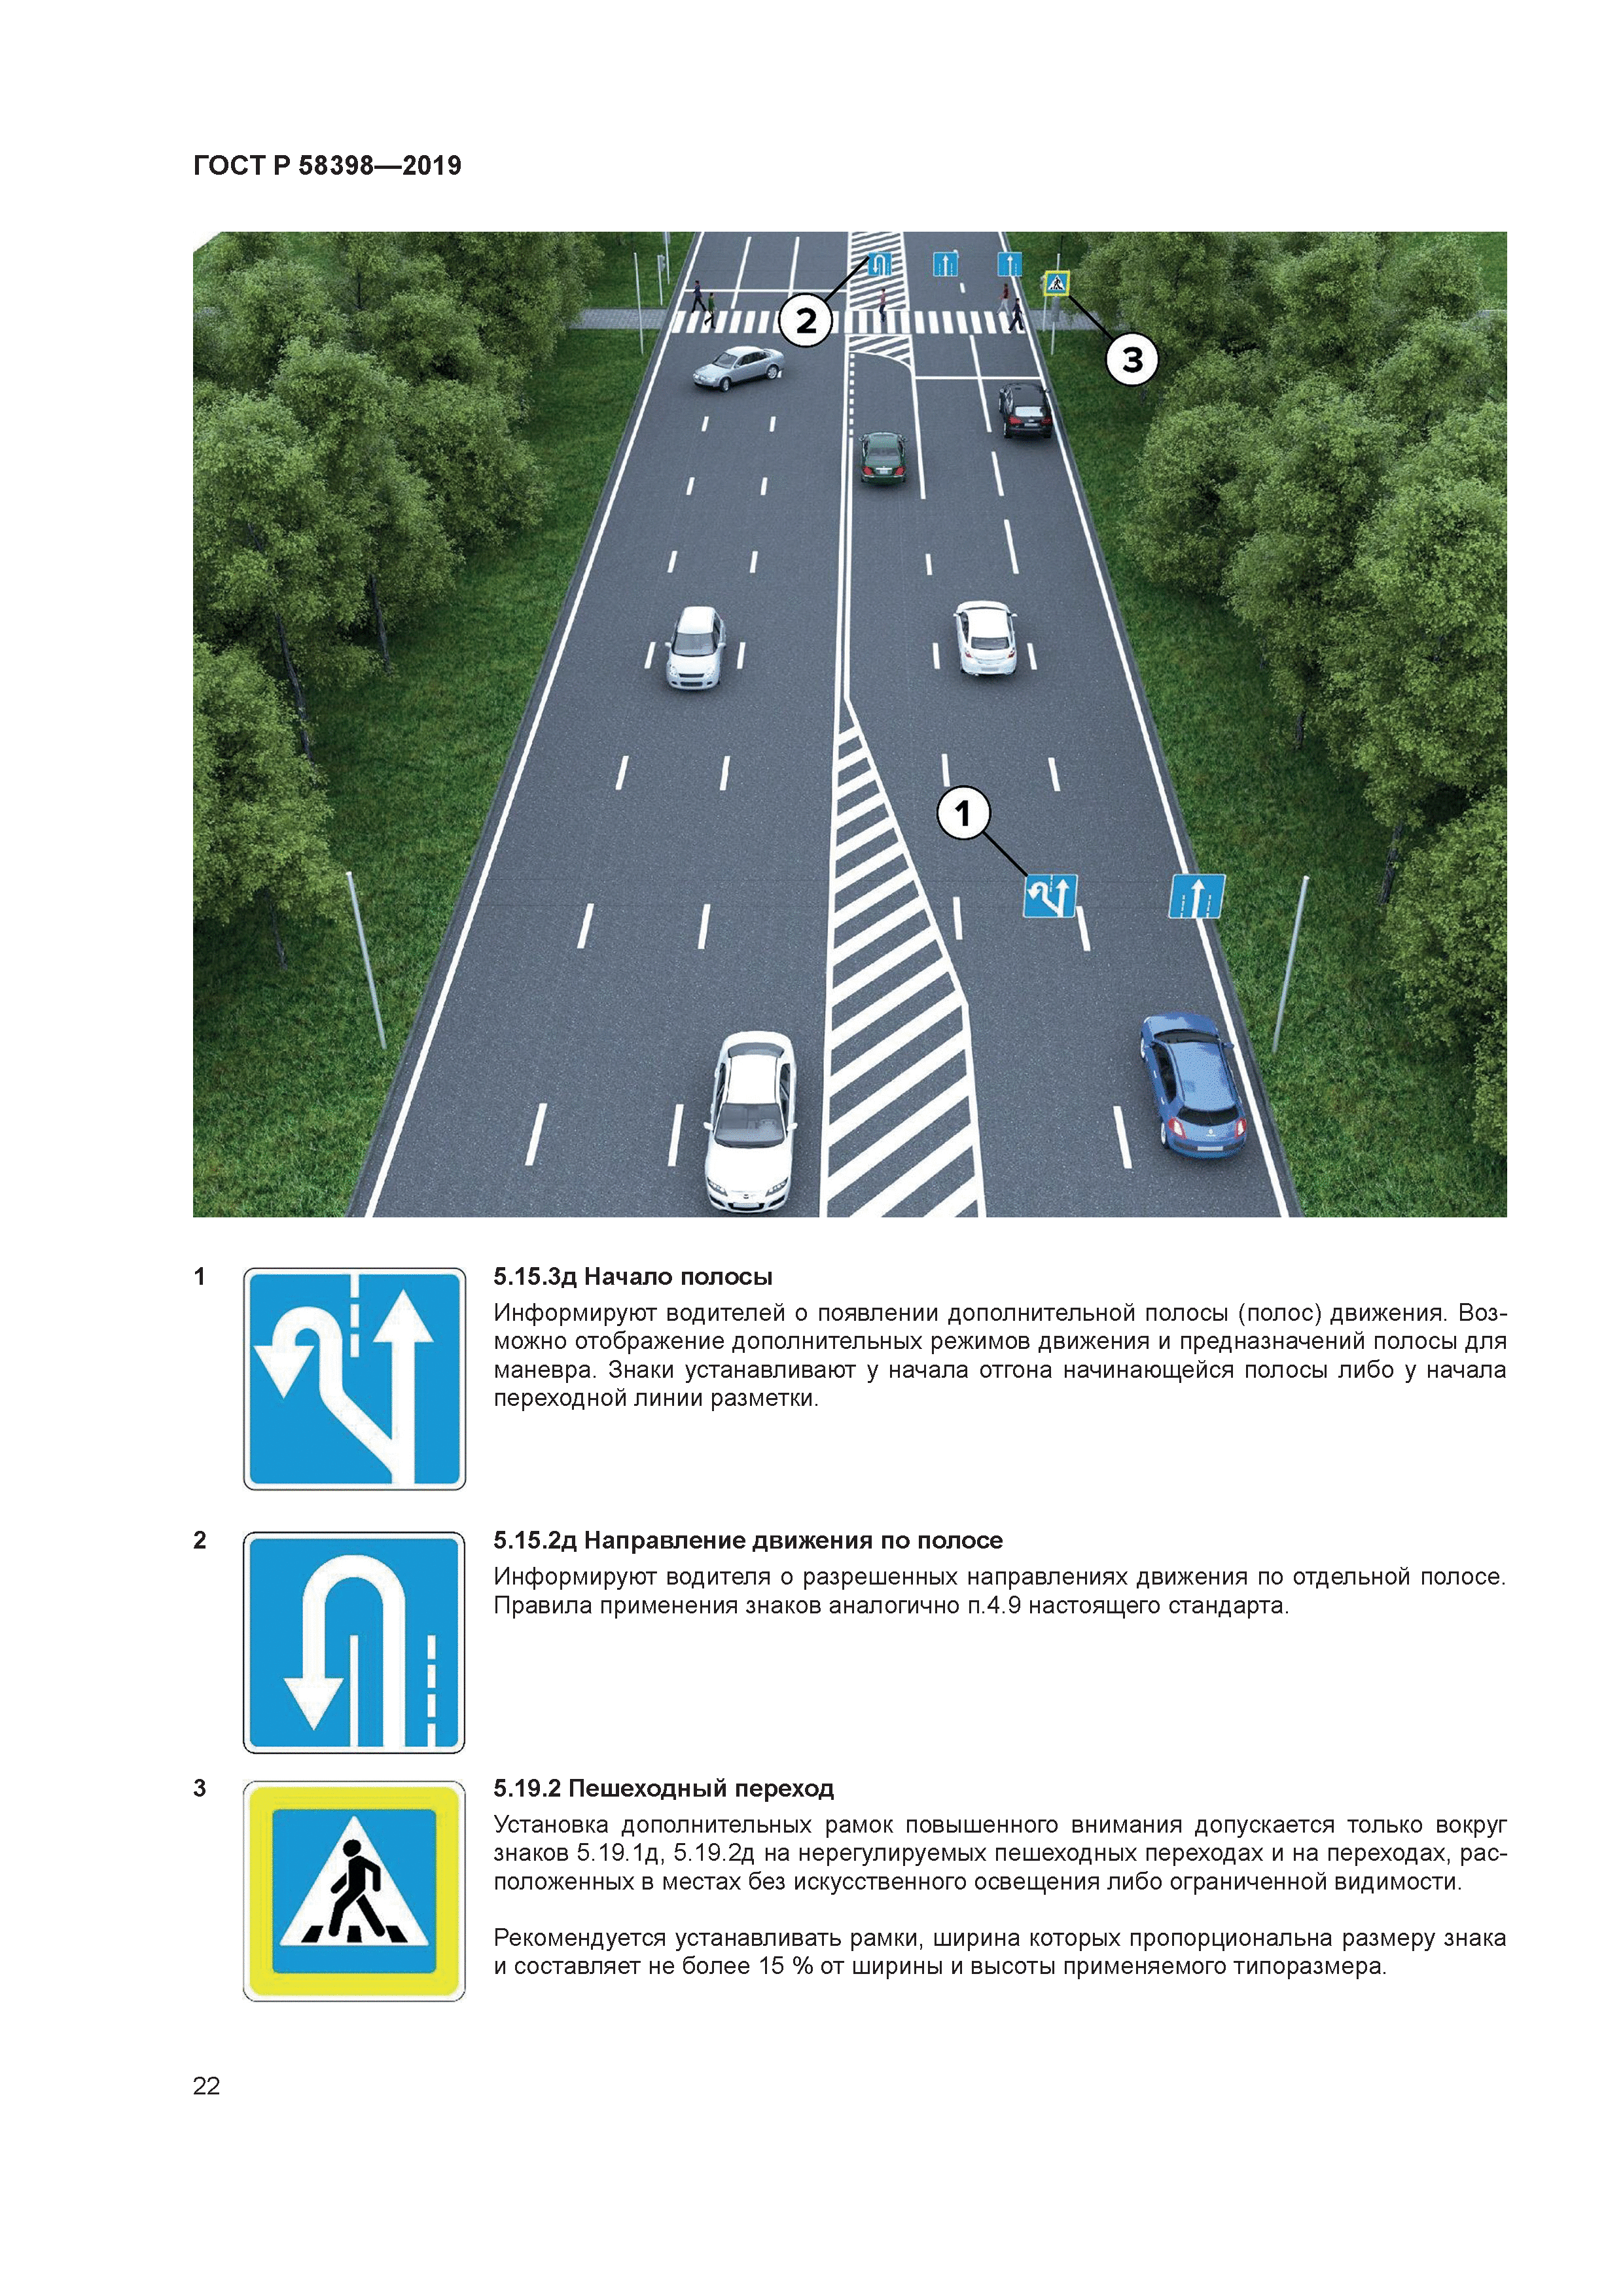 Знаки дорожной разметки с пояснениями